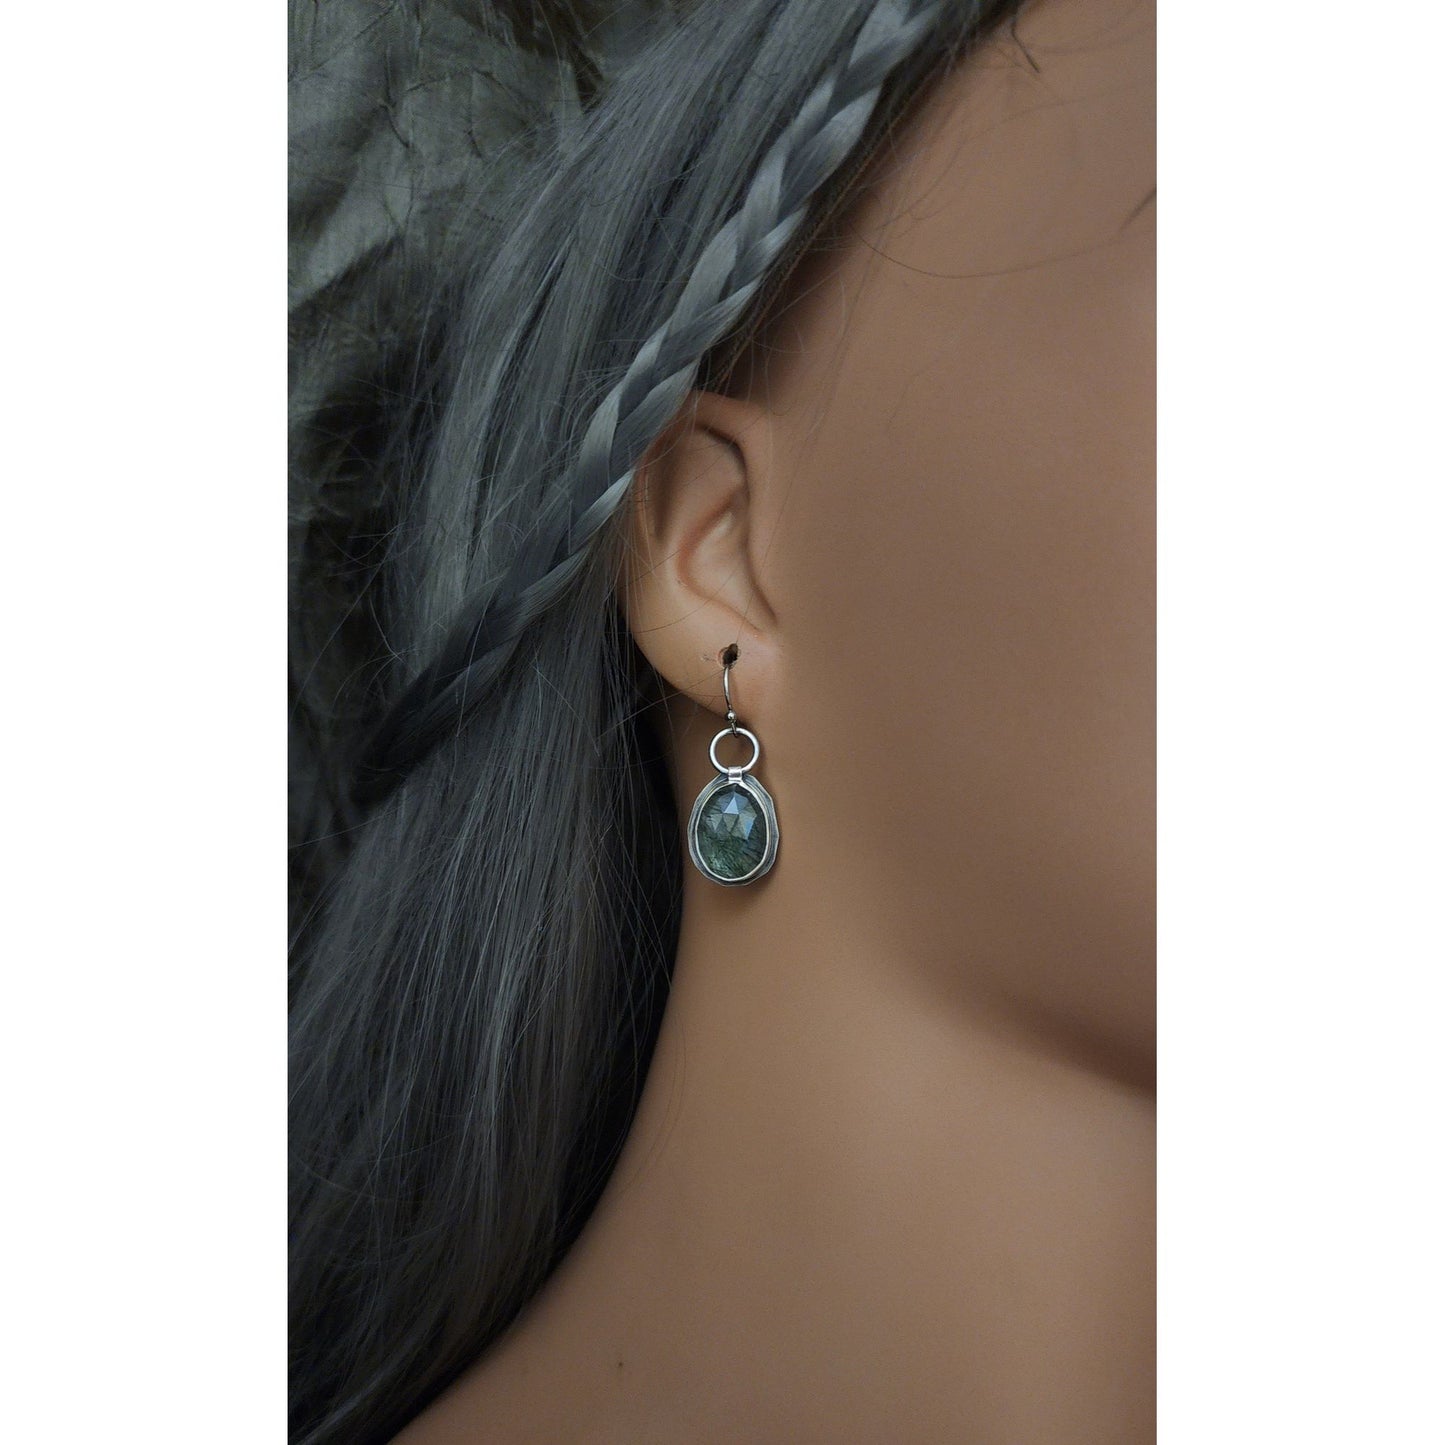 Moss Agate earrings